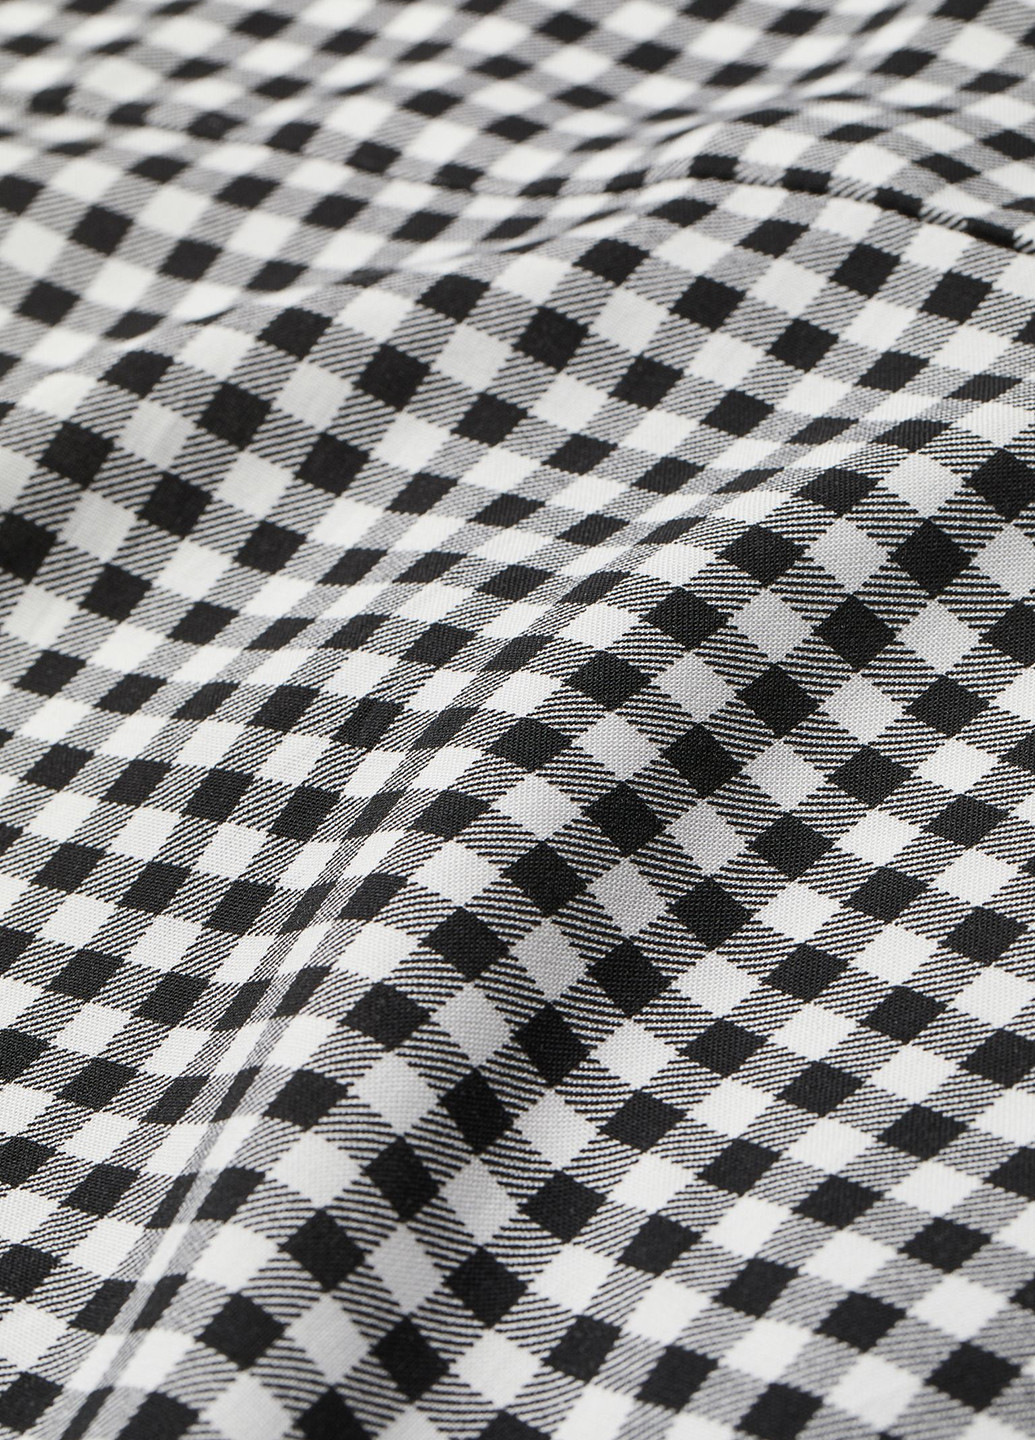 Черно-белое кэжуал платье H&M в клетку